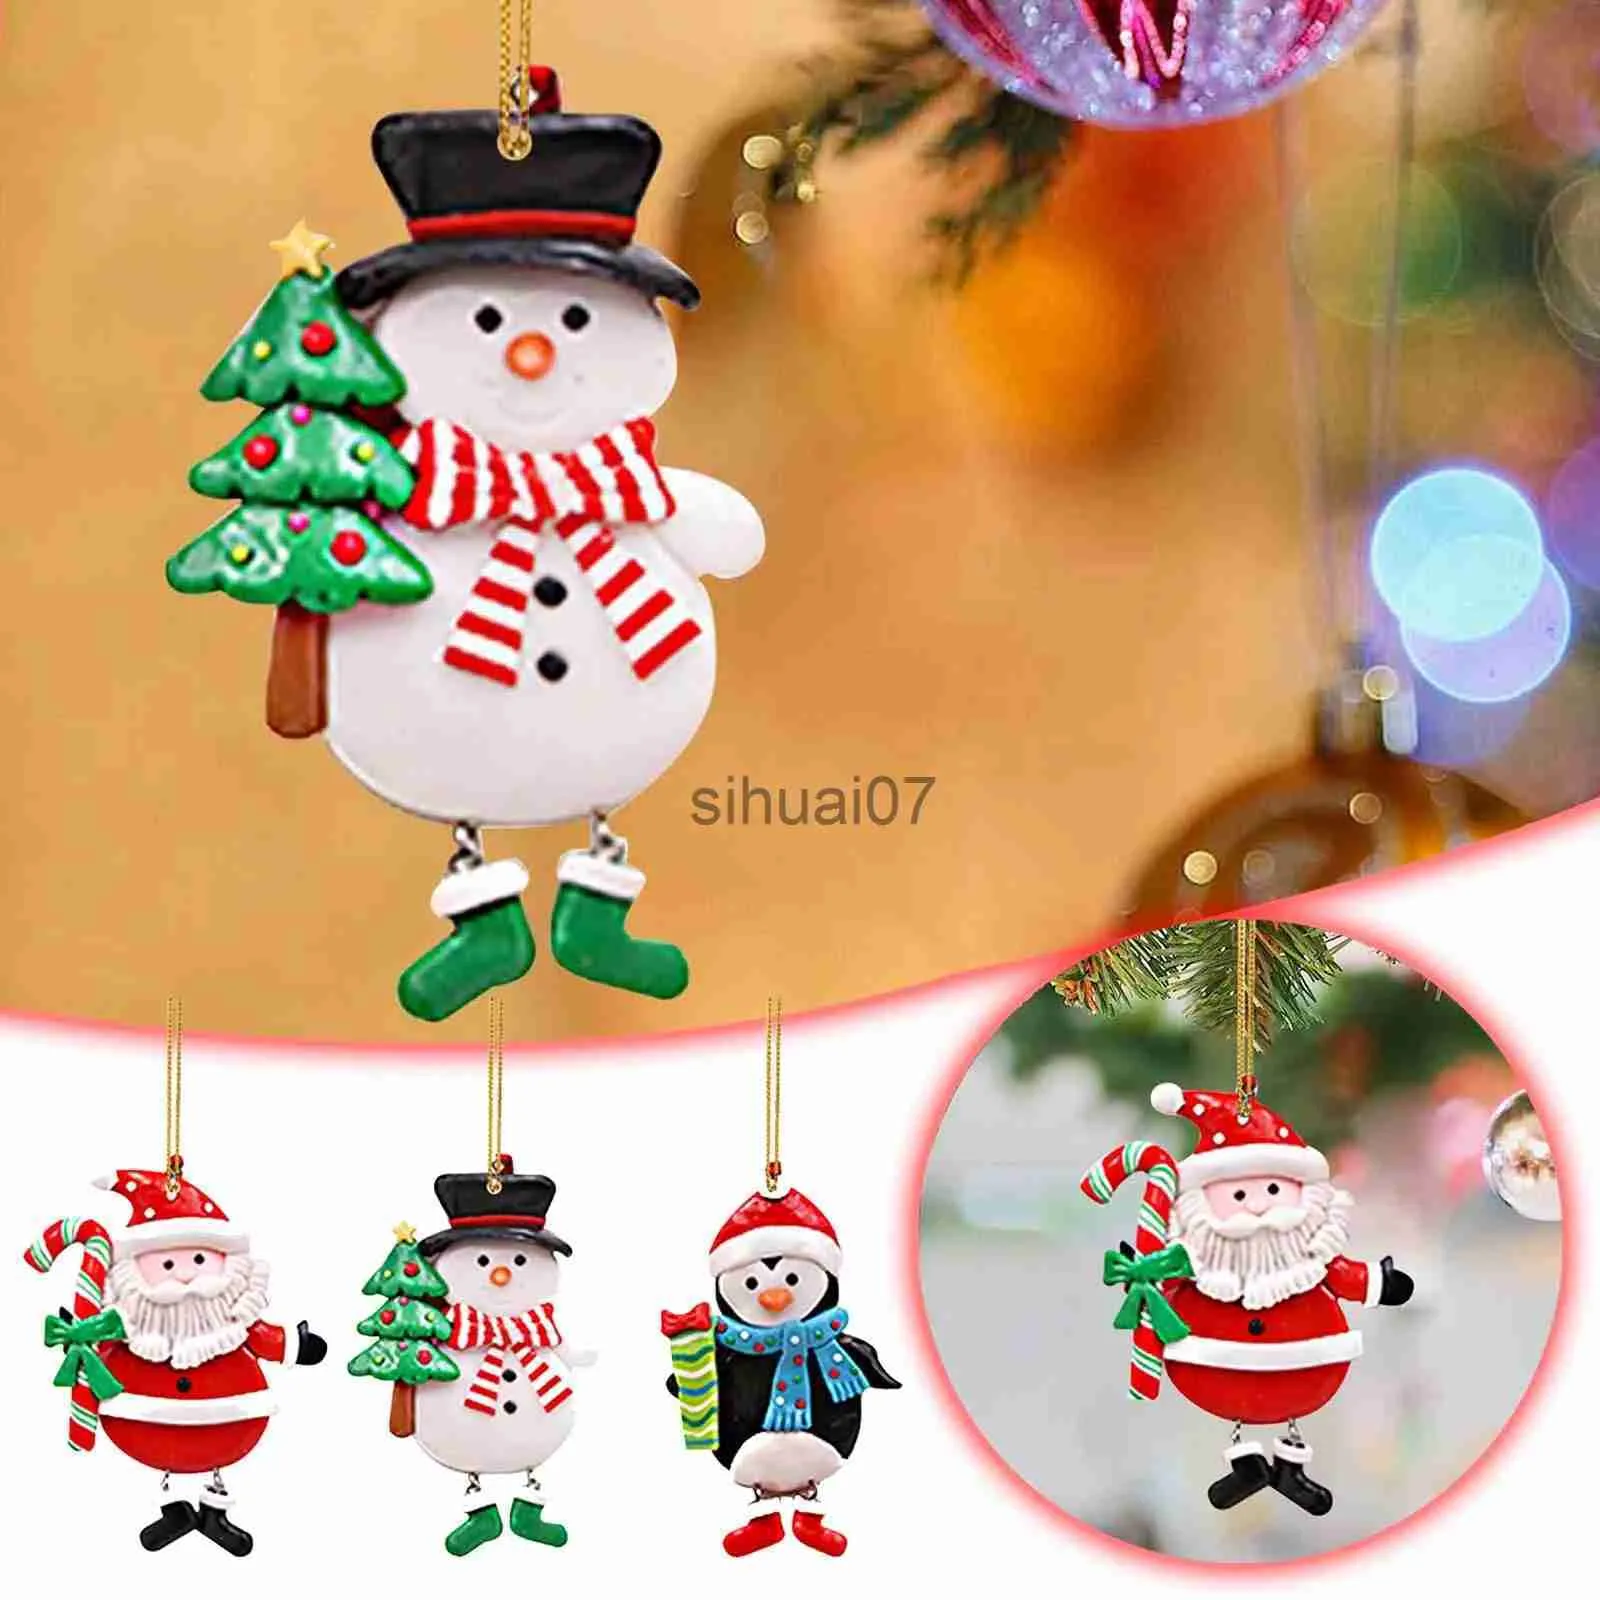 クリスマスの装飾クリスマス装飾品クリスマスギフトサンタ雪だるまペンダントクリスマスツリーホームナタールハッピーニューイヤーx1020のための飾り飾り